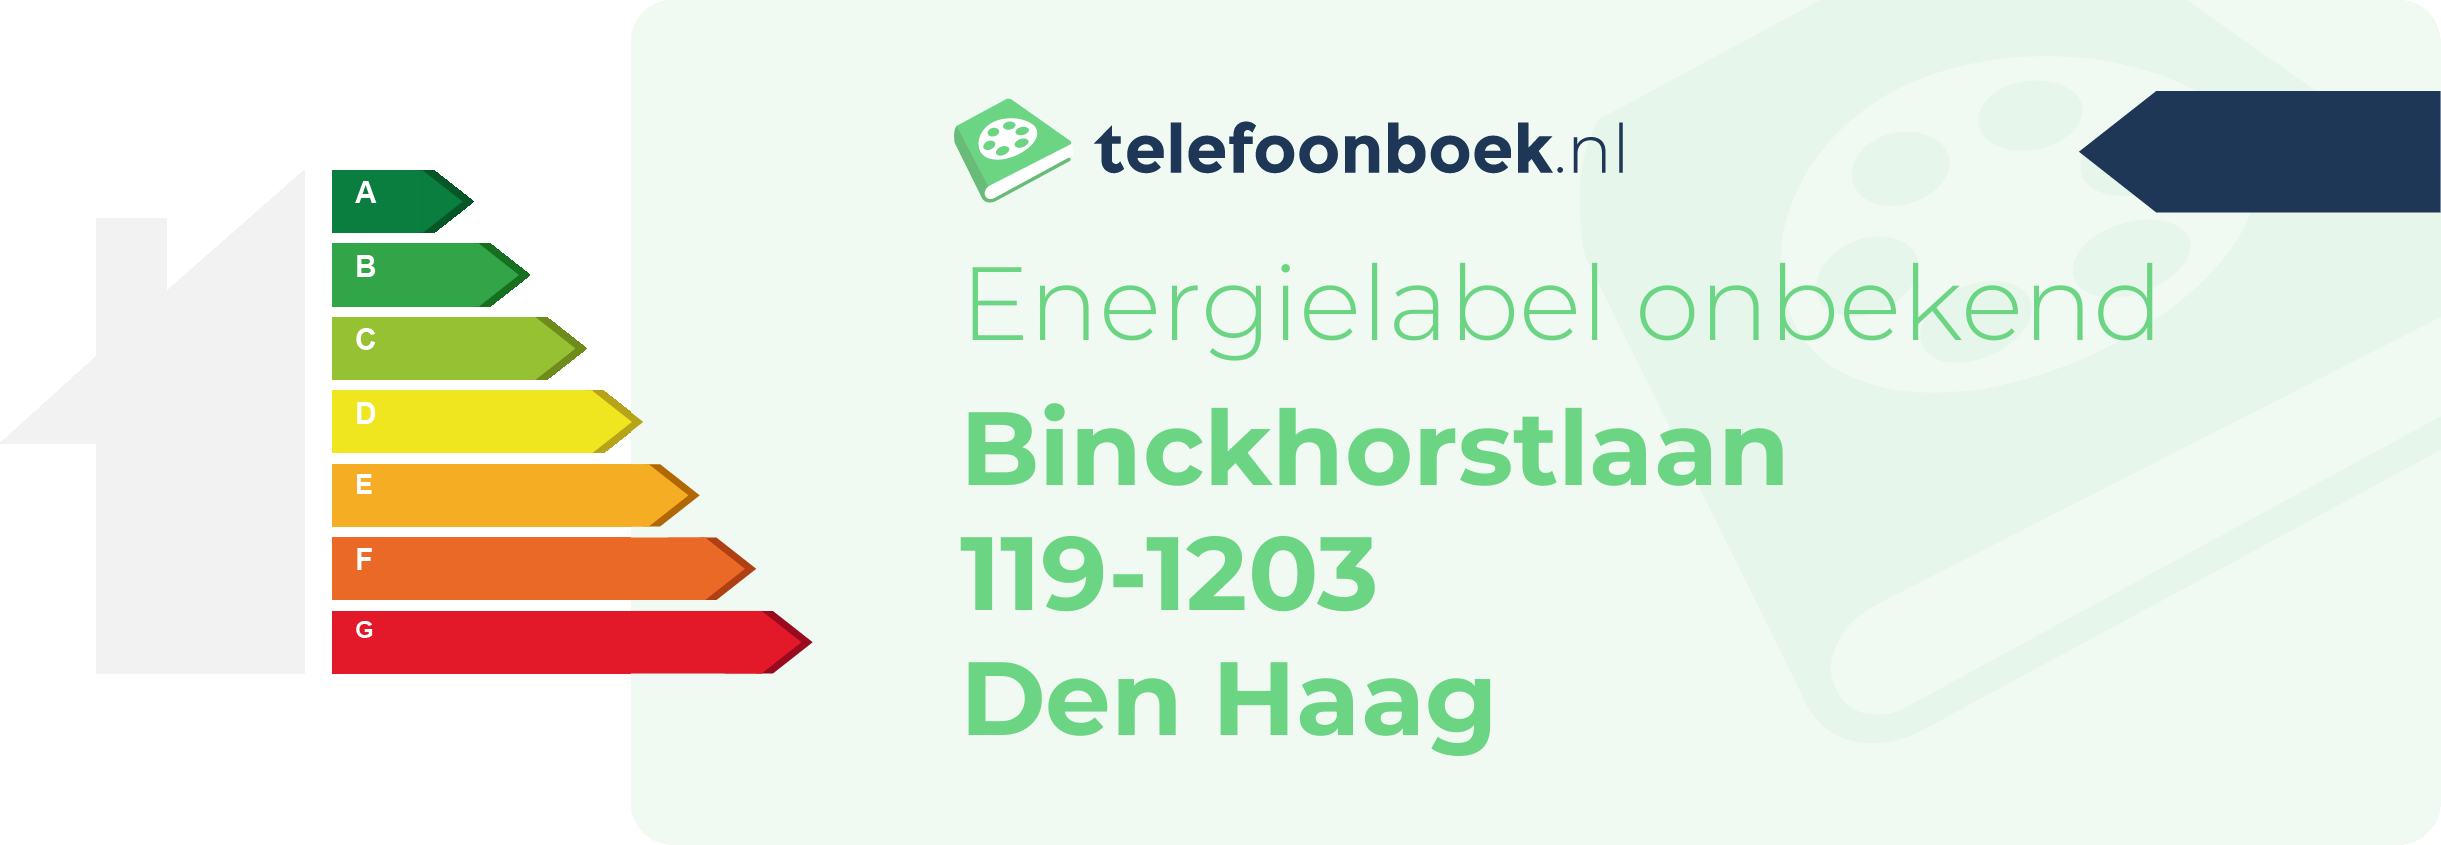 Energielabel Binckhorstlaan 119-1203 Den Haag